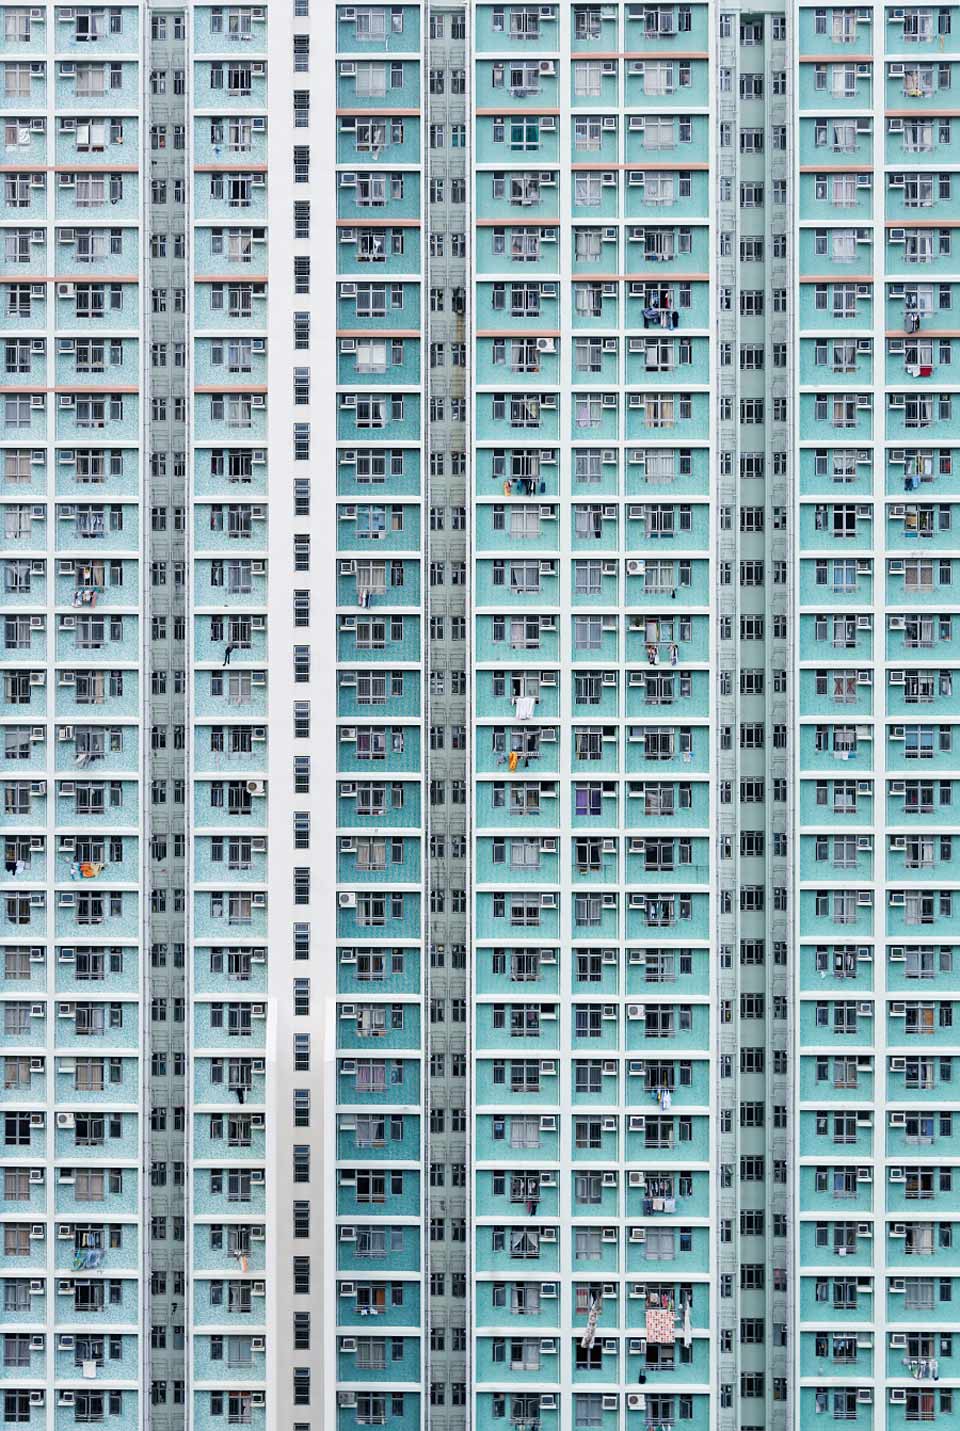 Eine abstrakte Ansicht eines Hochhauswohnblocks